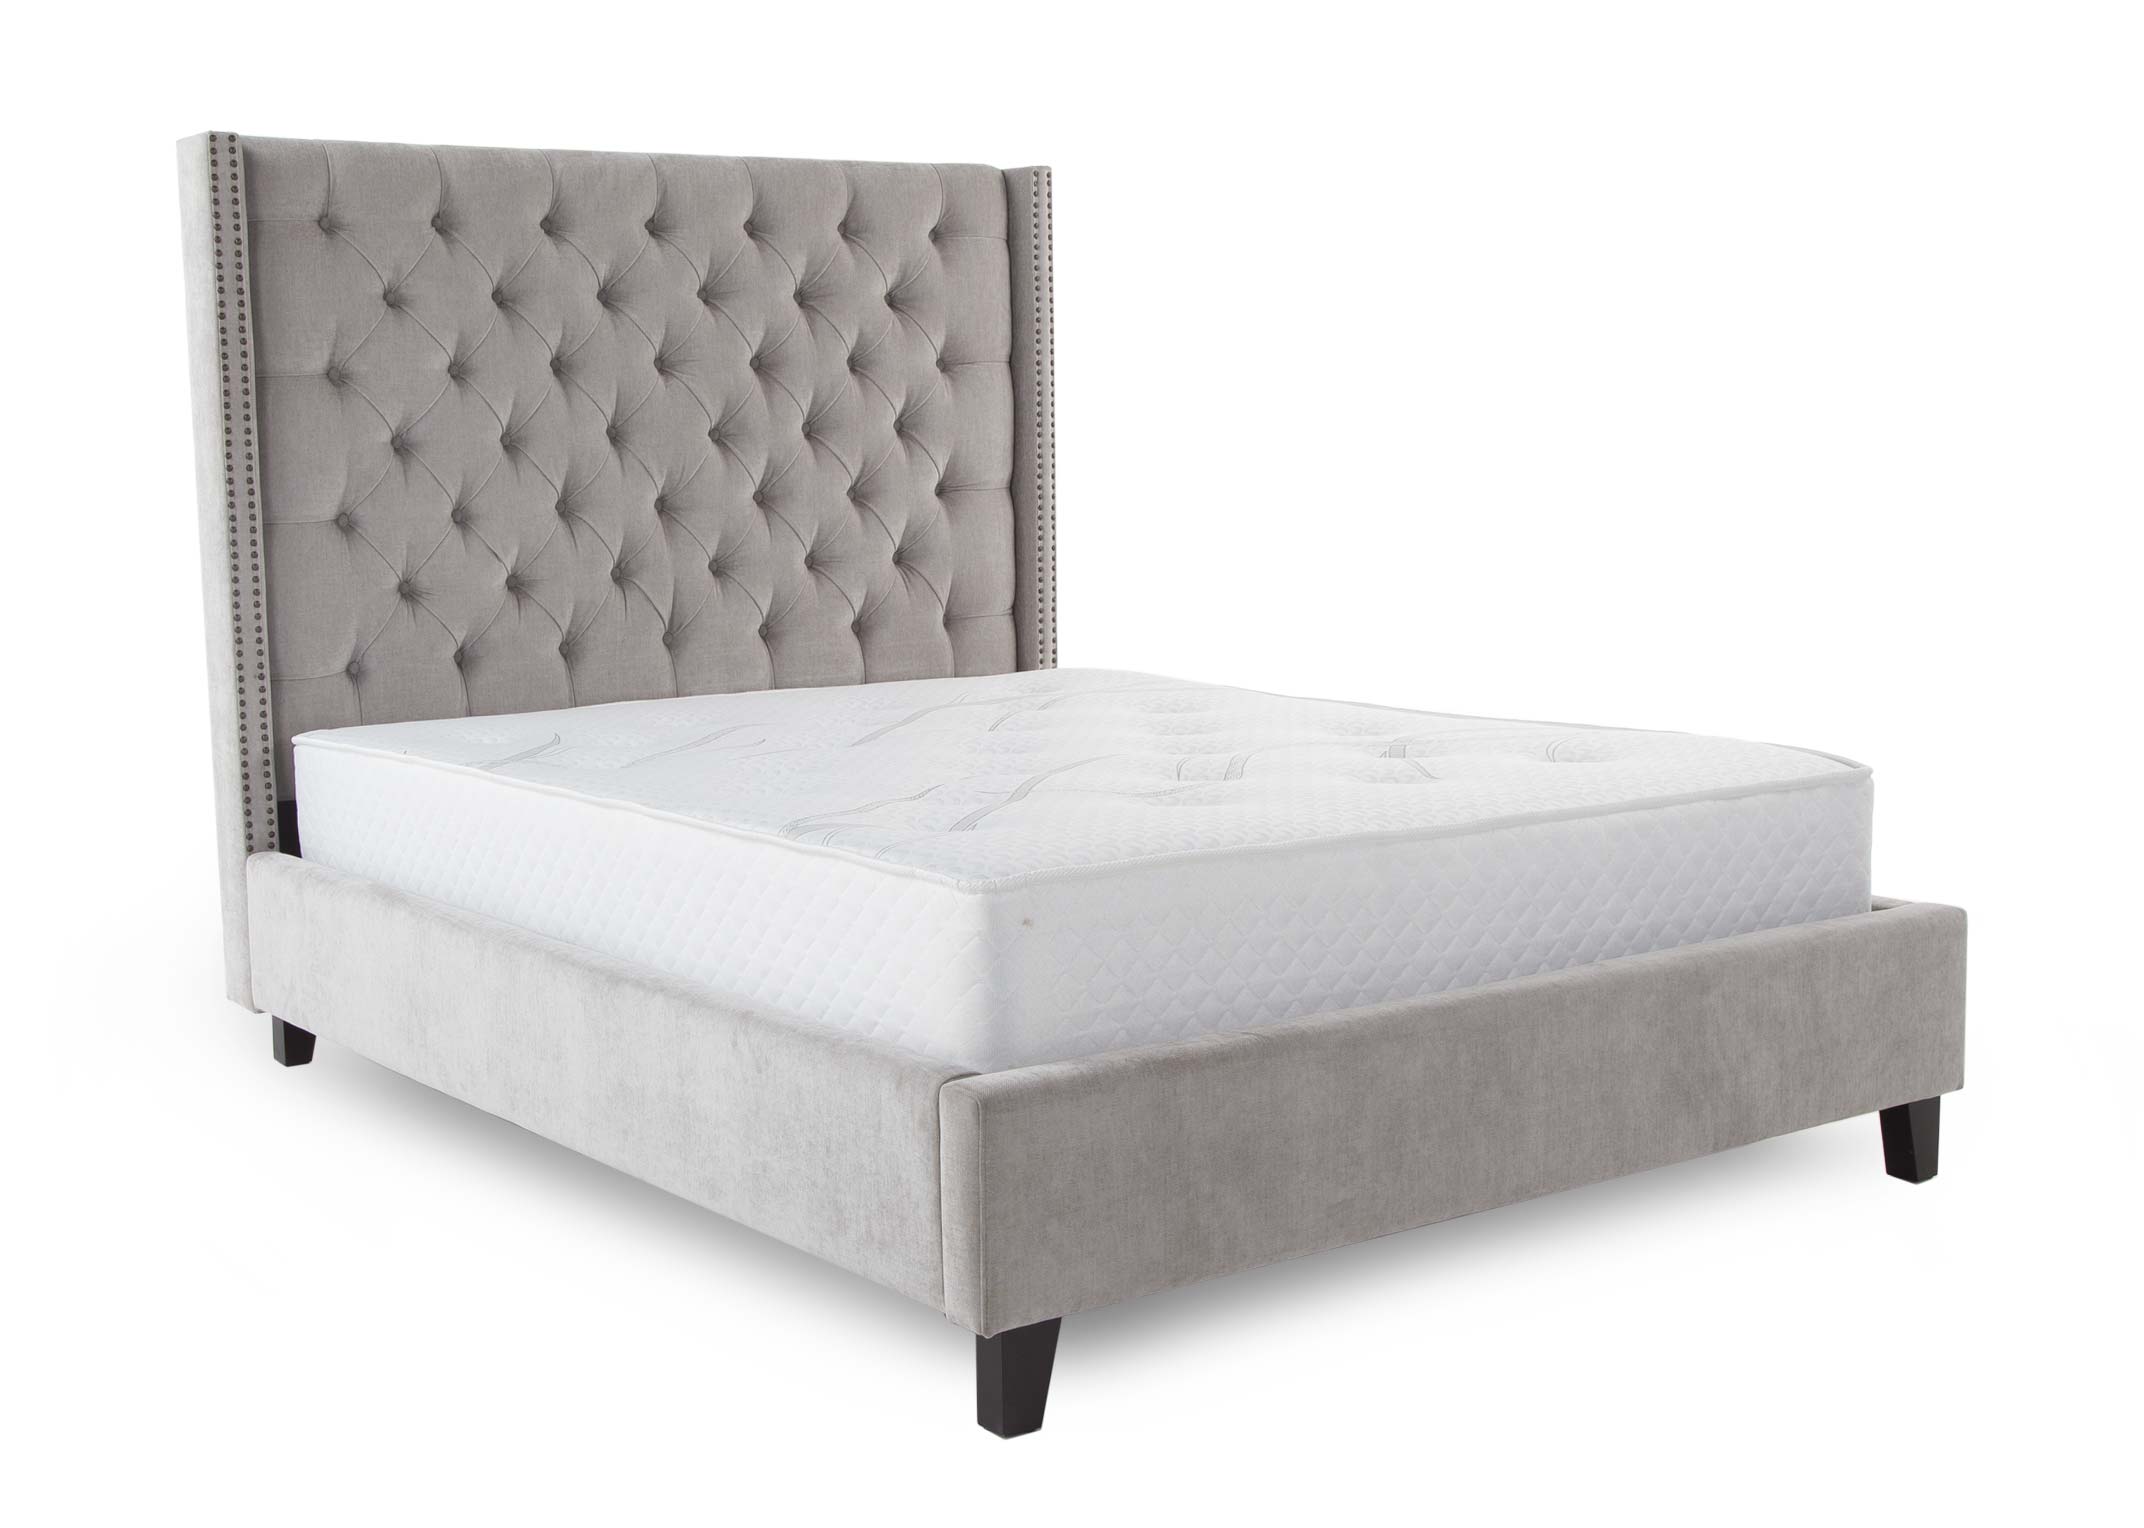 Super King 6ft Grey Fabric Bed Frame, King Grey Bed Frame